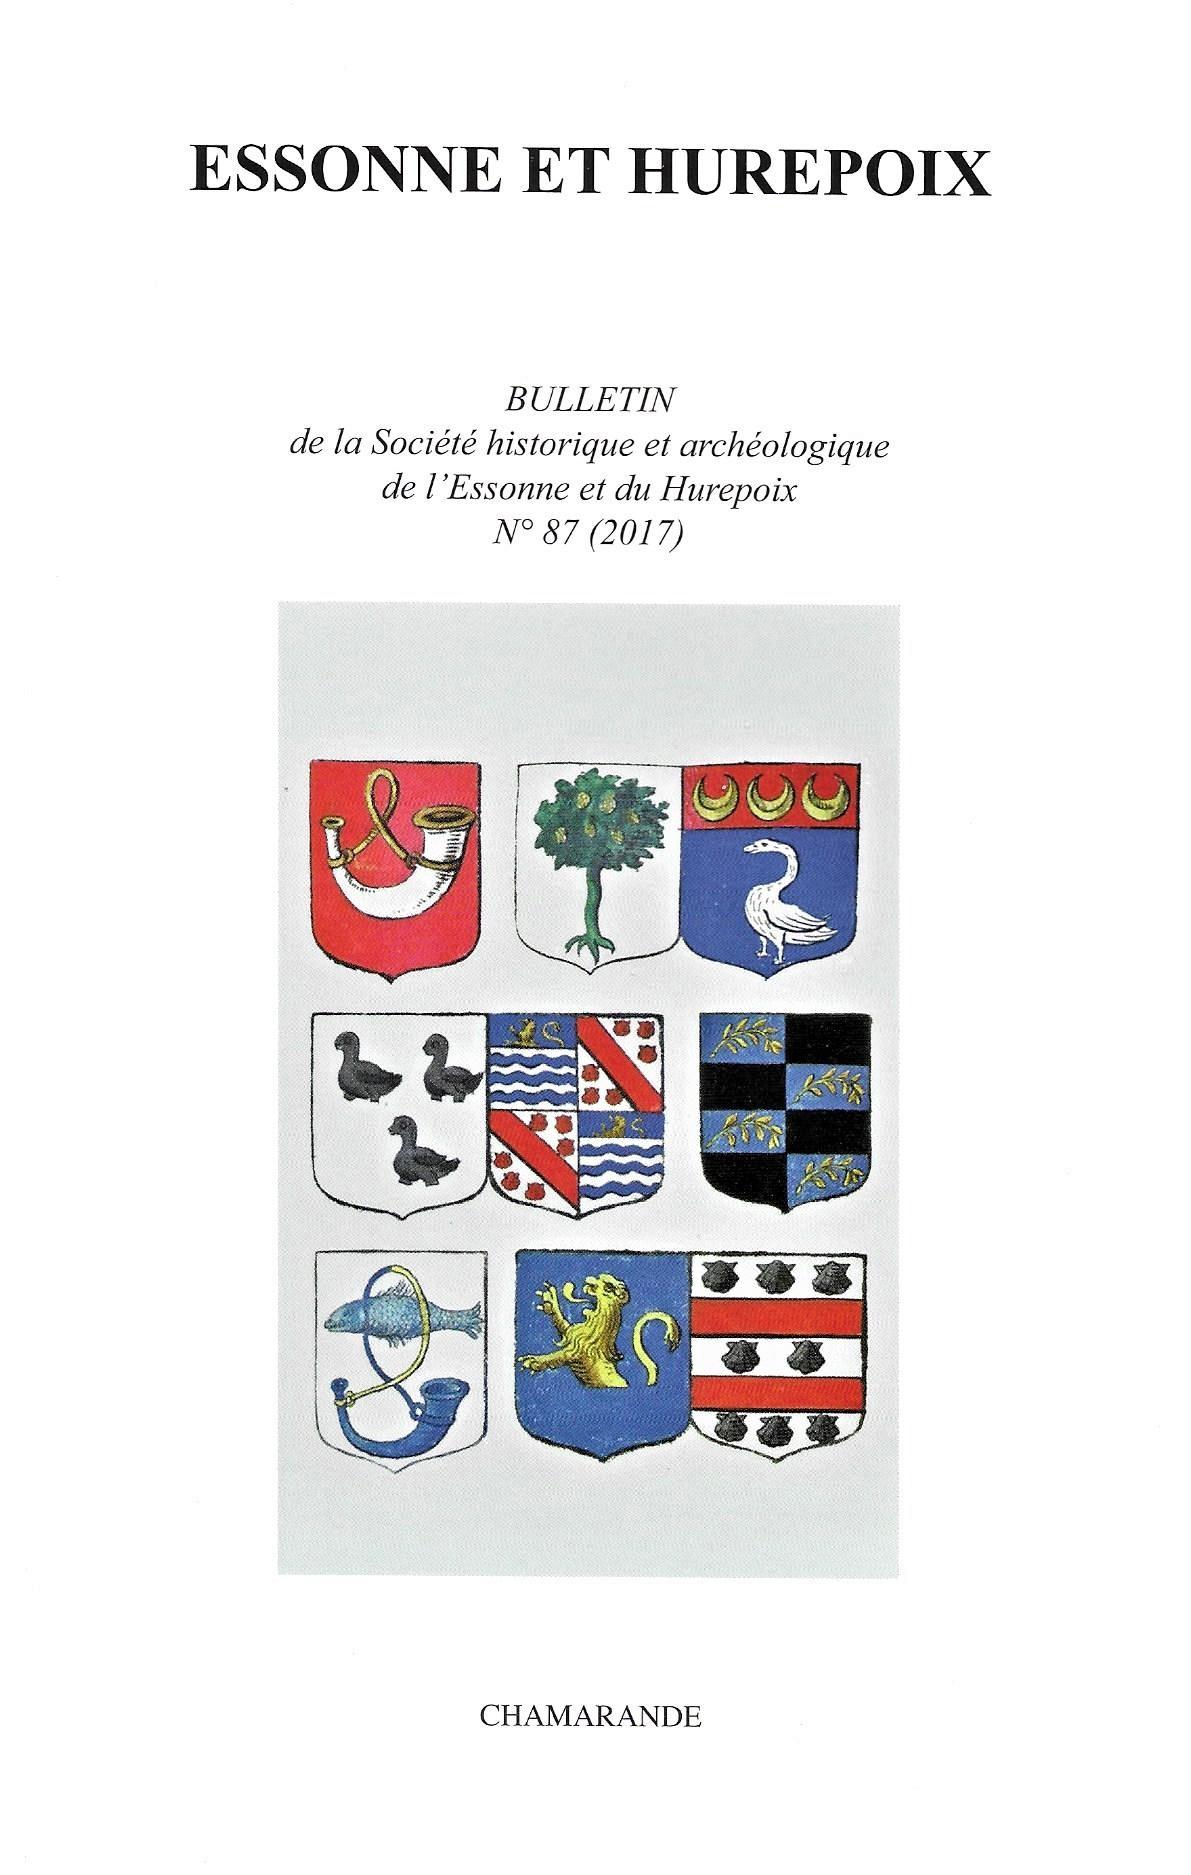 Bulletin de la Société historique et archéologique de l'Essonne et du Hurepoix , n° 87, 20172017